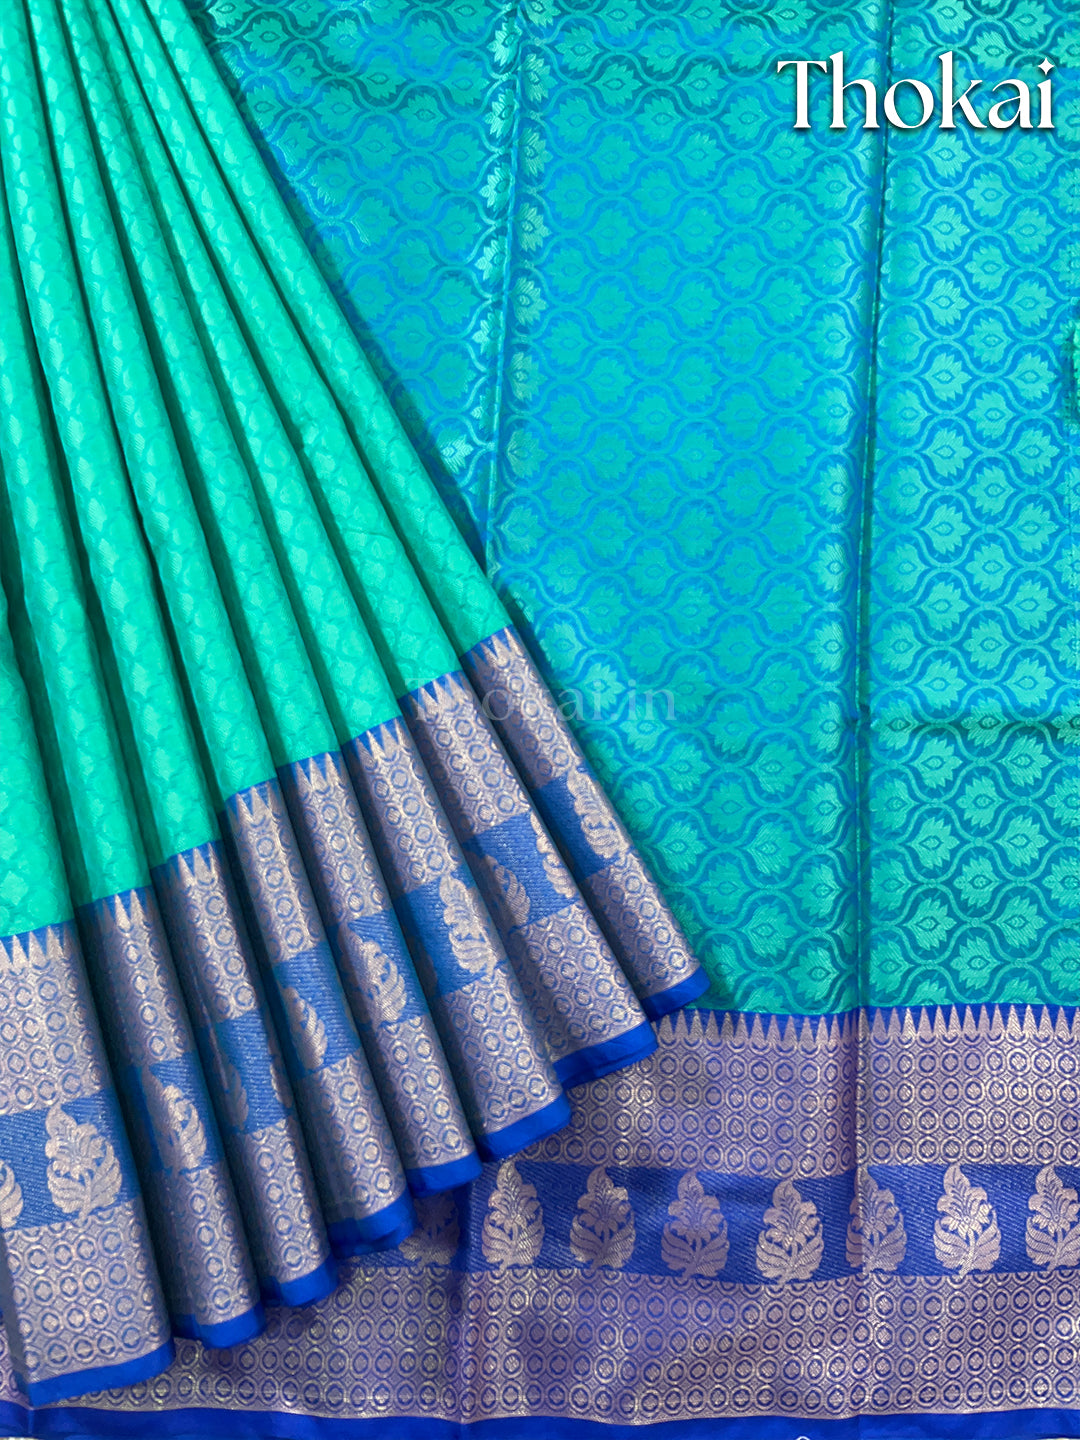 Dual color of turquoise banarasi kora muslin saree